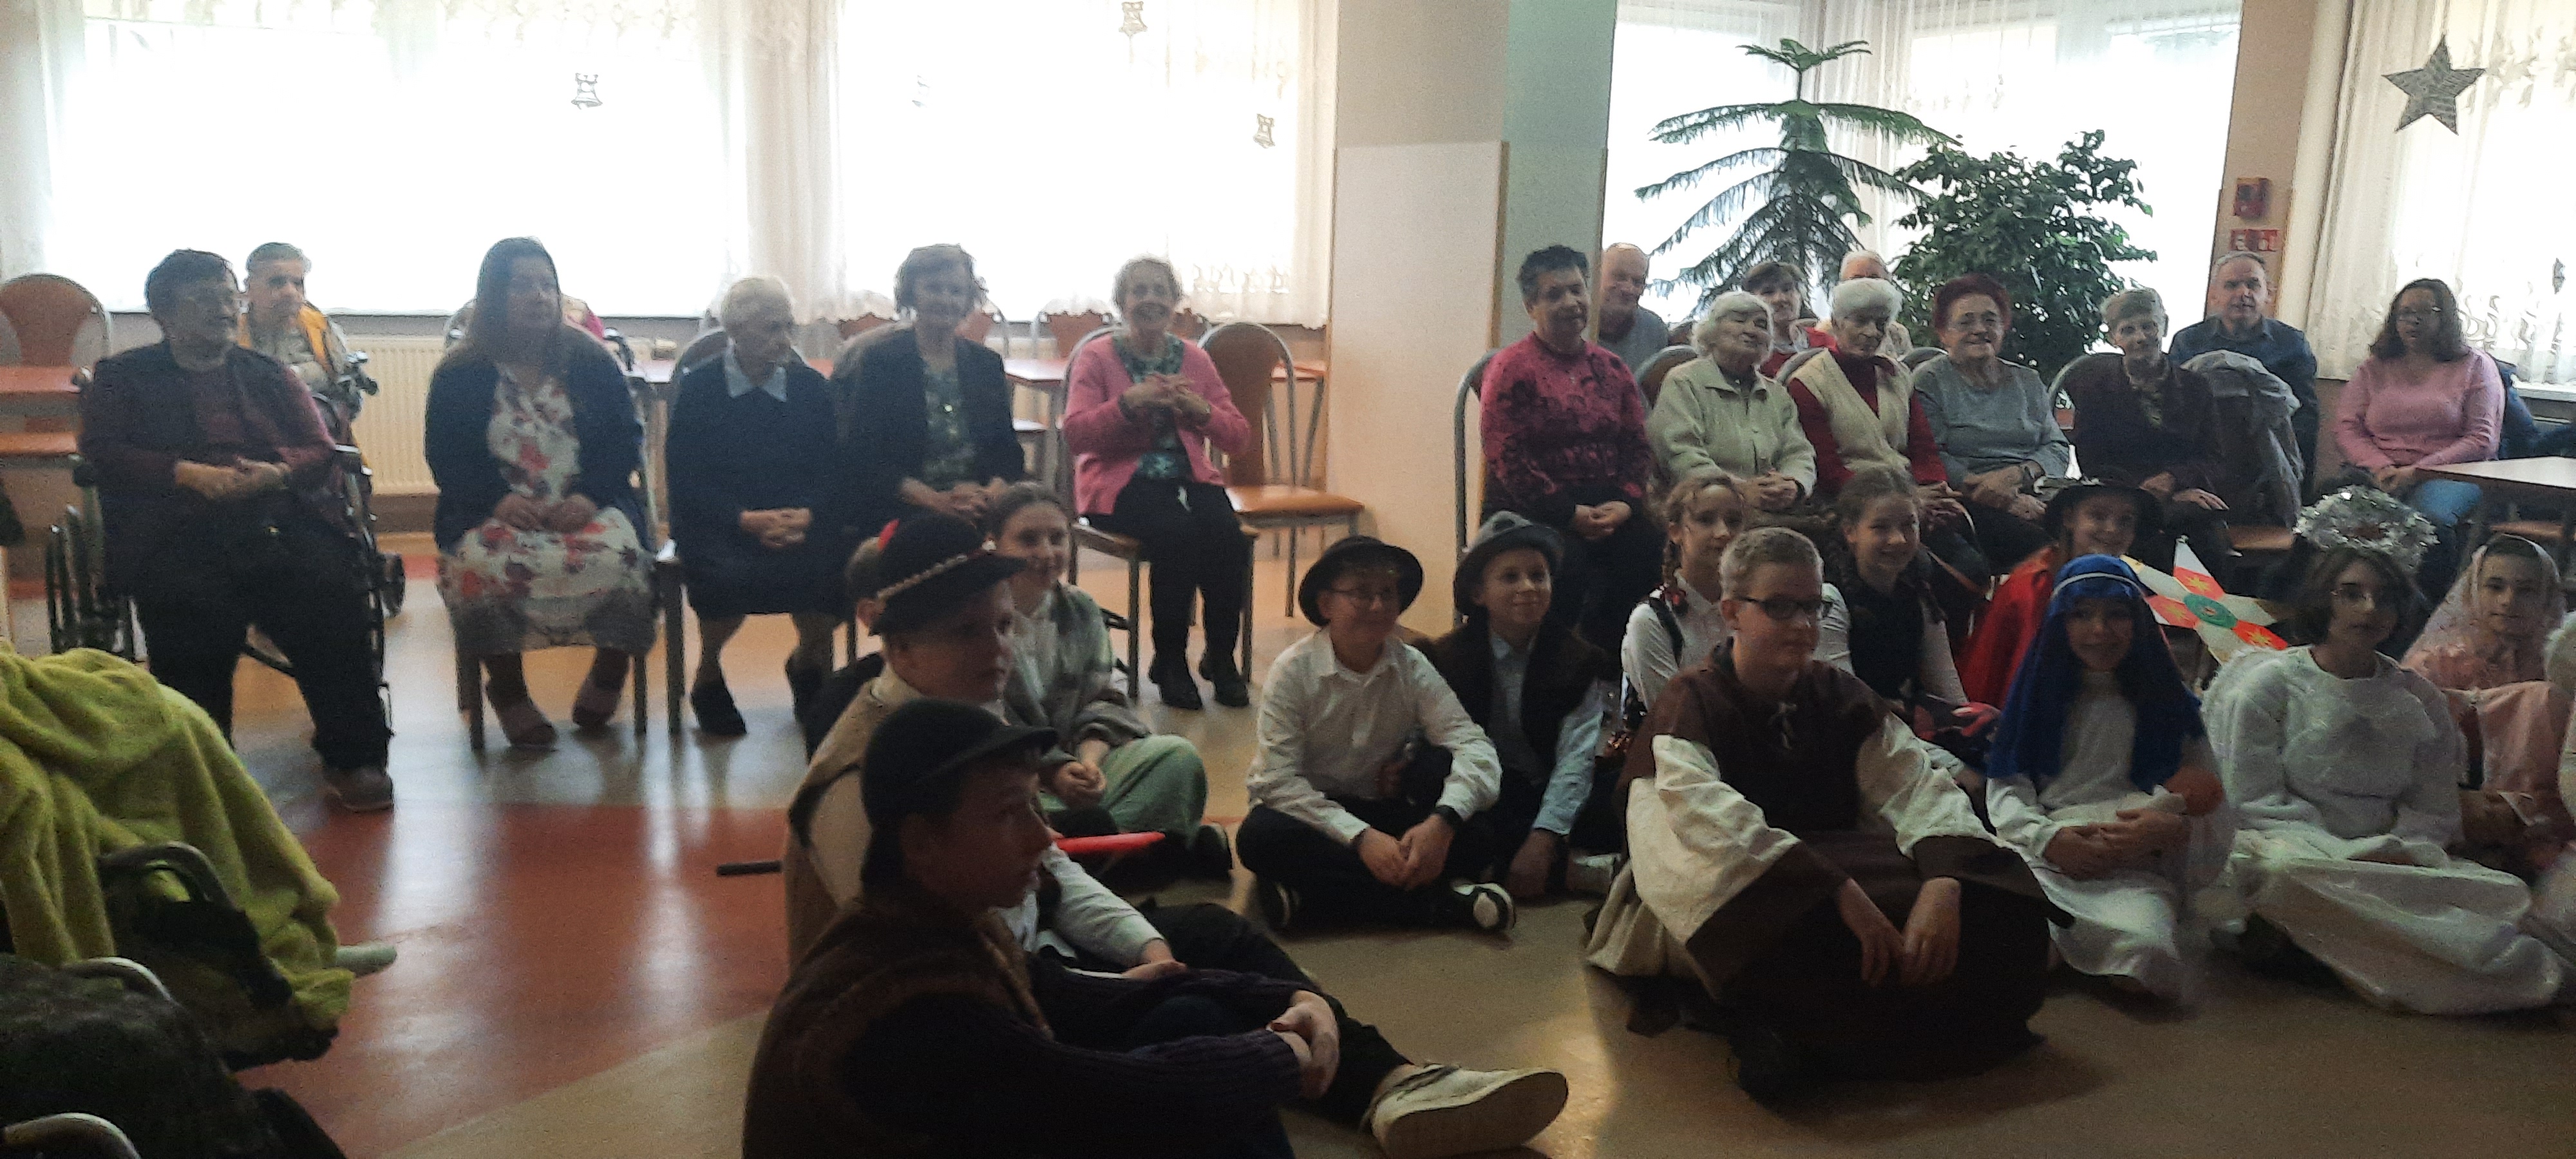 Seniorzy oglądają występ dzieci prezentujących Jasełka